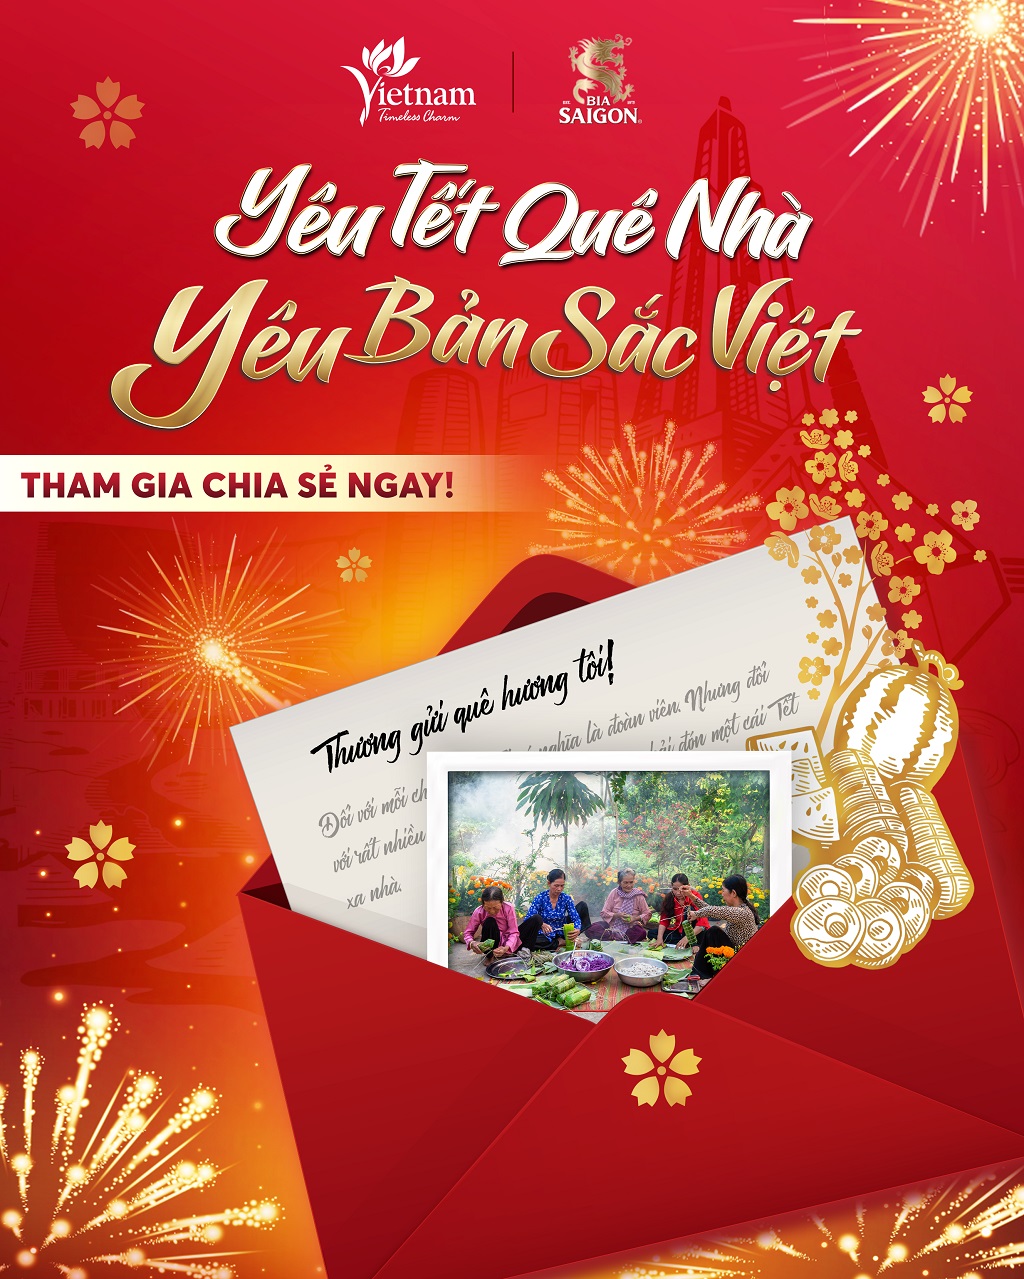 Lan tỏa thông điệp yêu thương qua cuộc thi “Yêu Tết quê nhà - Yêu bản sắc Việt”